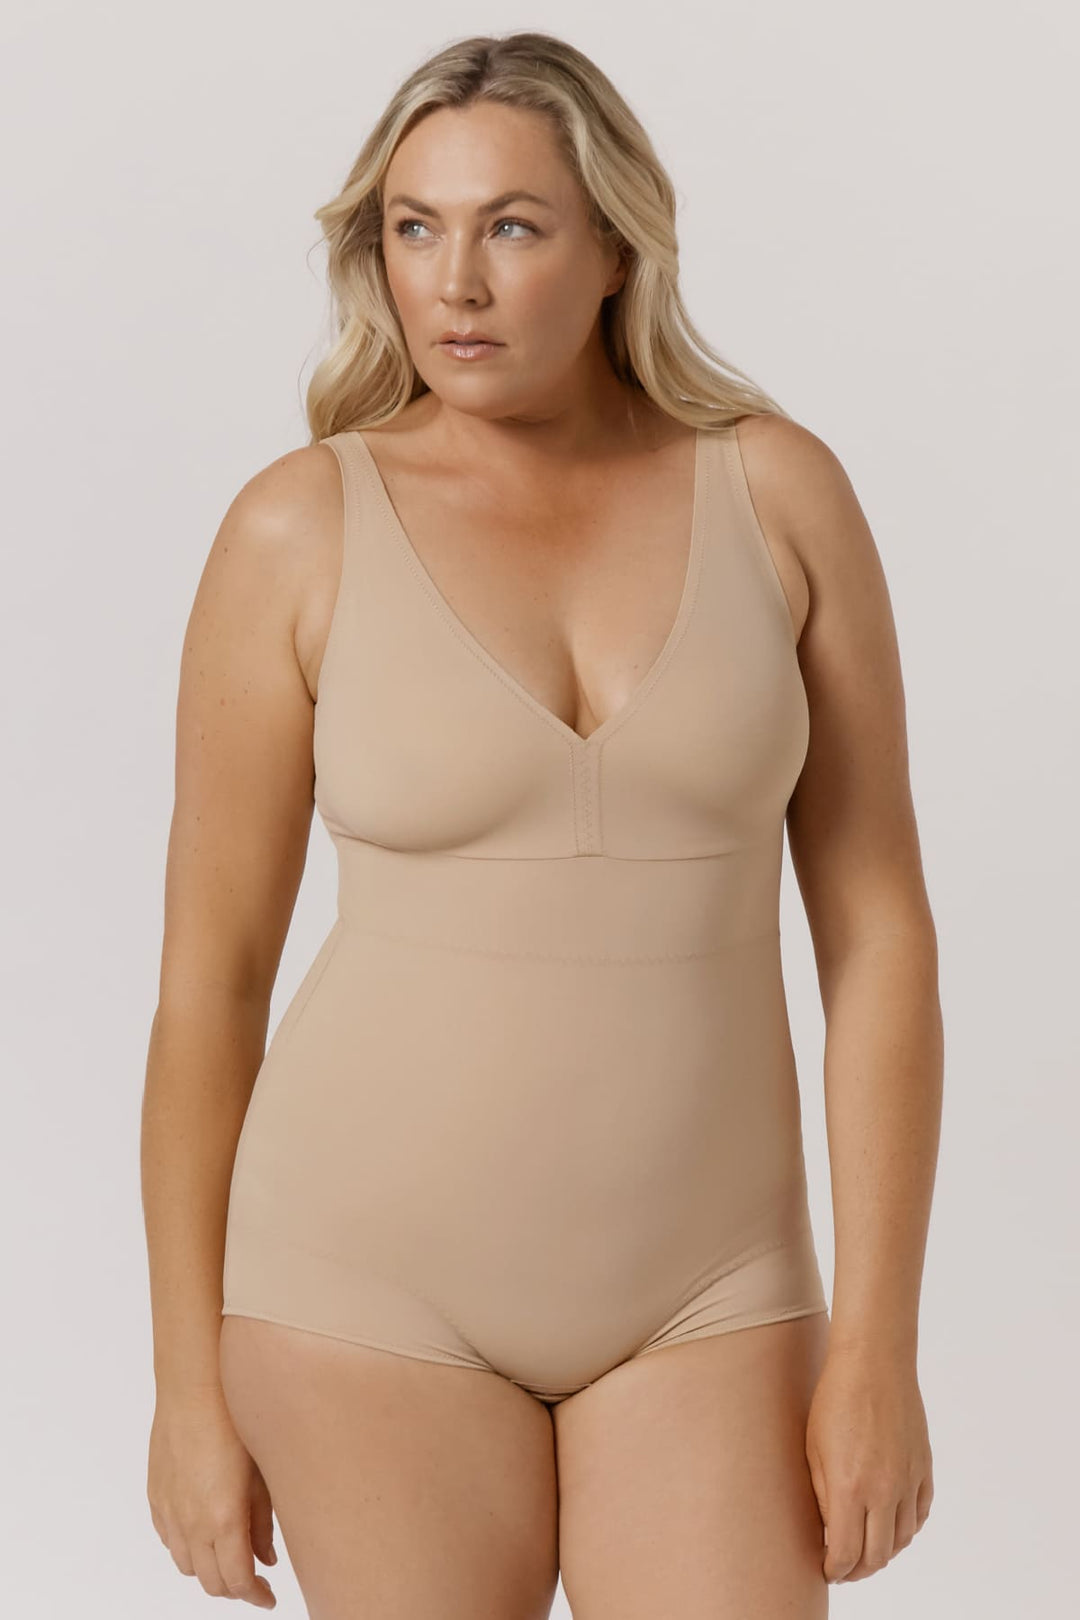 shape bodysuit wear plus size｜TikTok Search